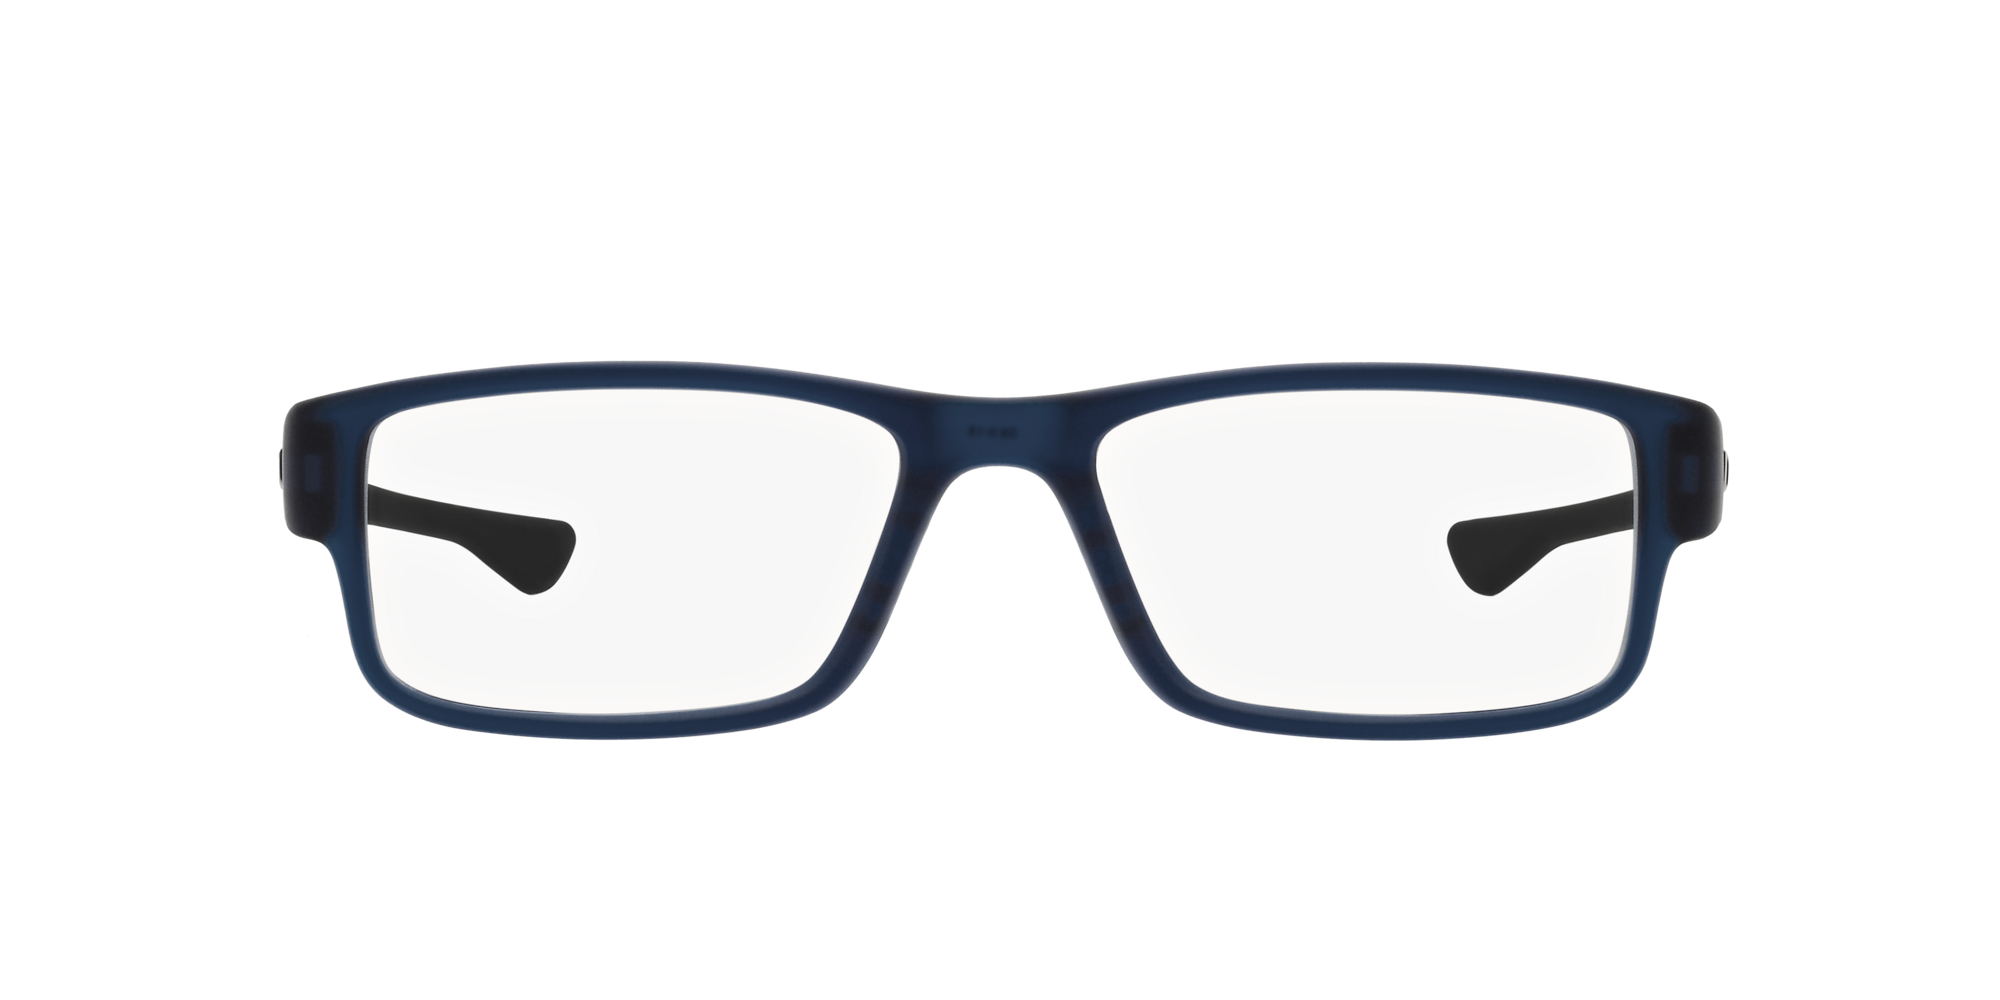 Das Bild zeigt die Korrektionsbrille OX804618  von der Marke Oakley  in  matt blau transluzent.